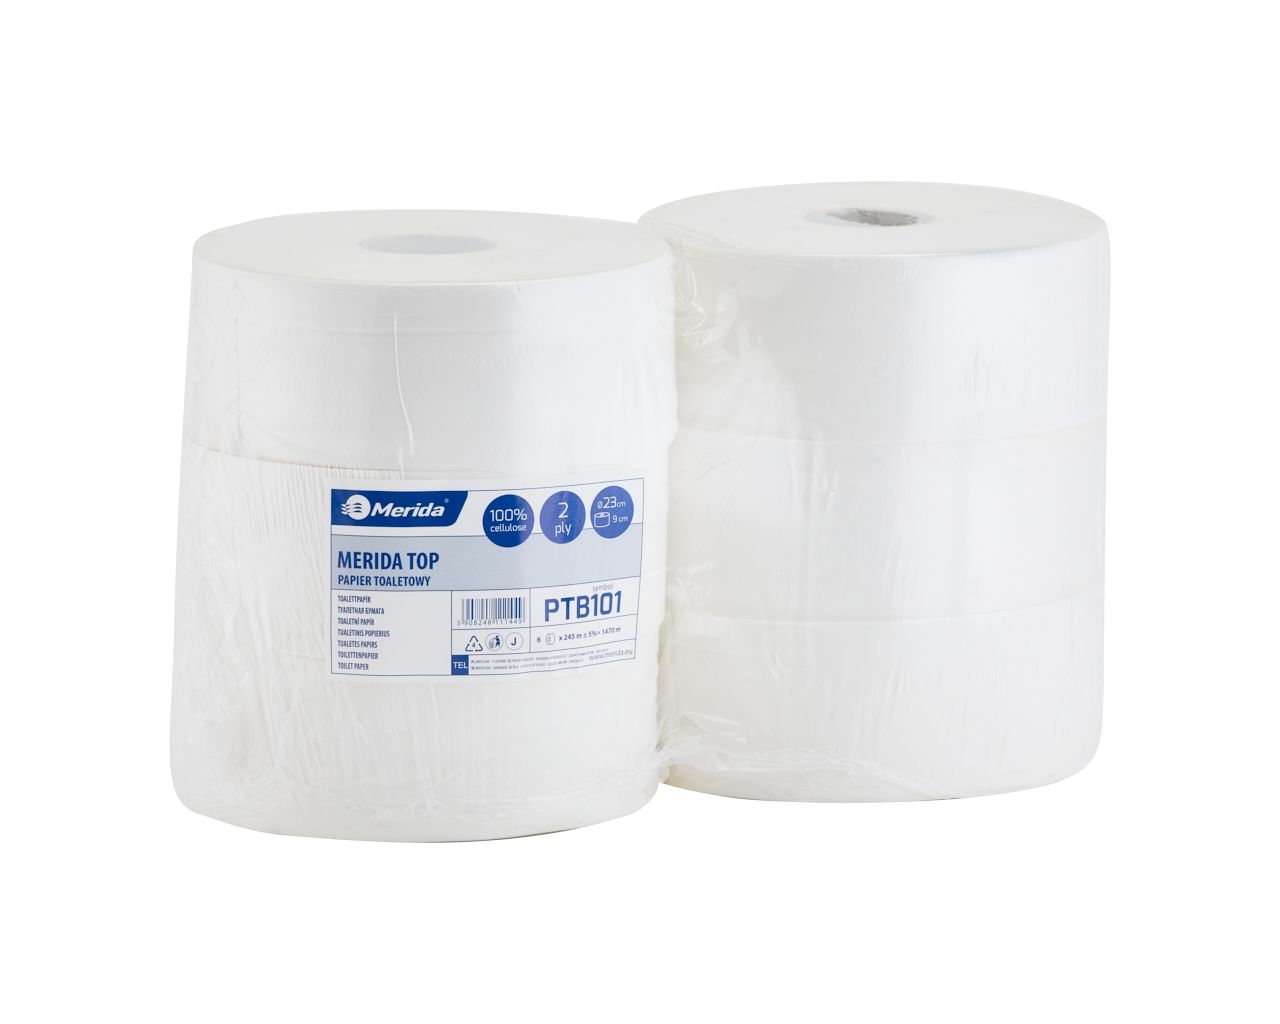 Papier toaletowy MERIDA TOP, biały, średnica 23 cm, długość roli 245 m